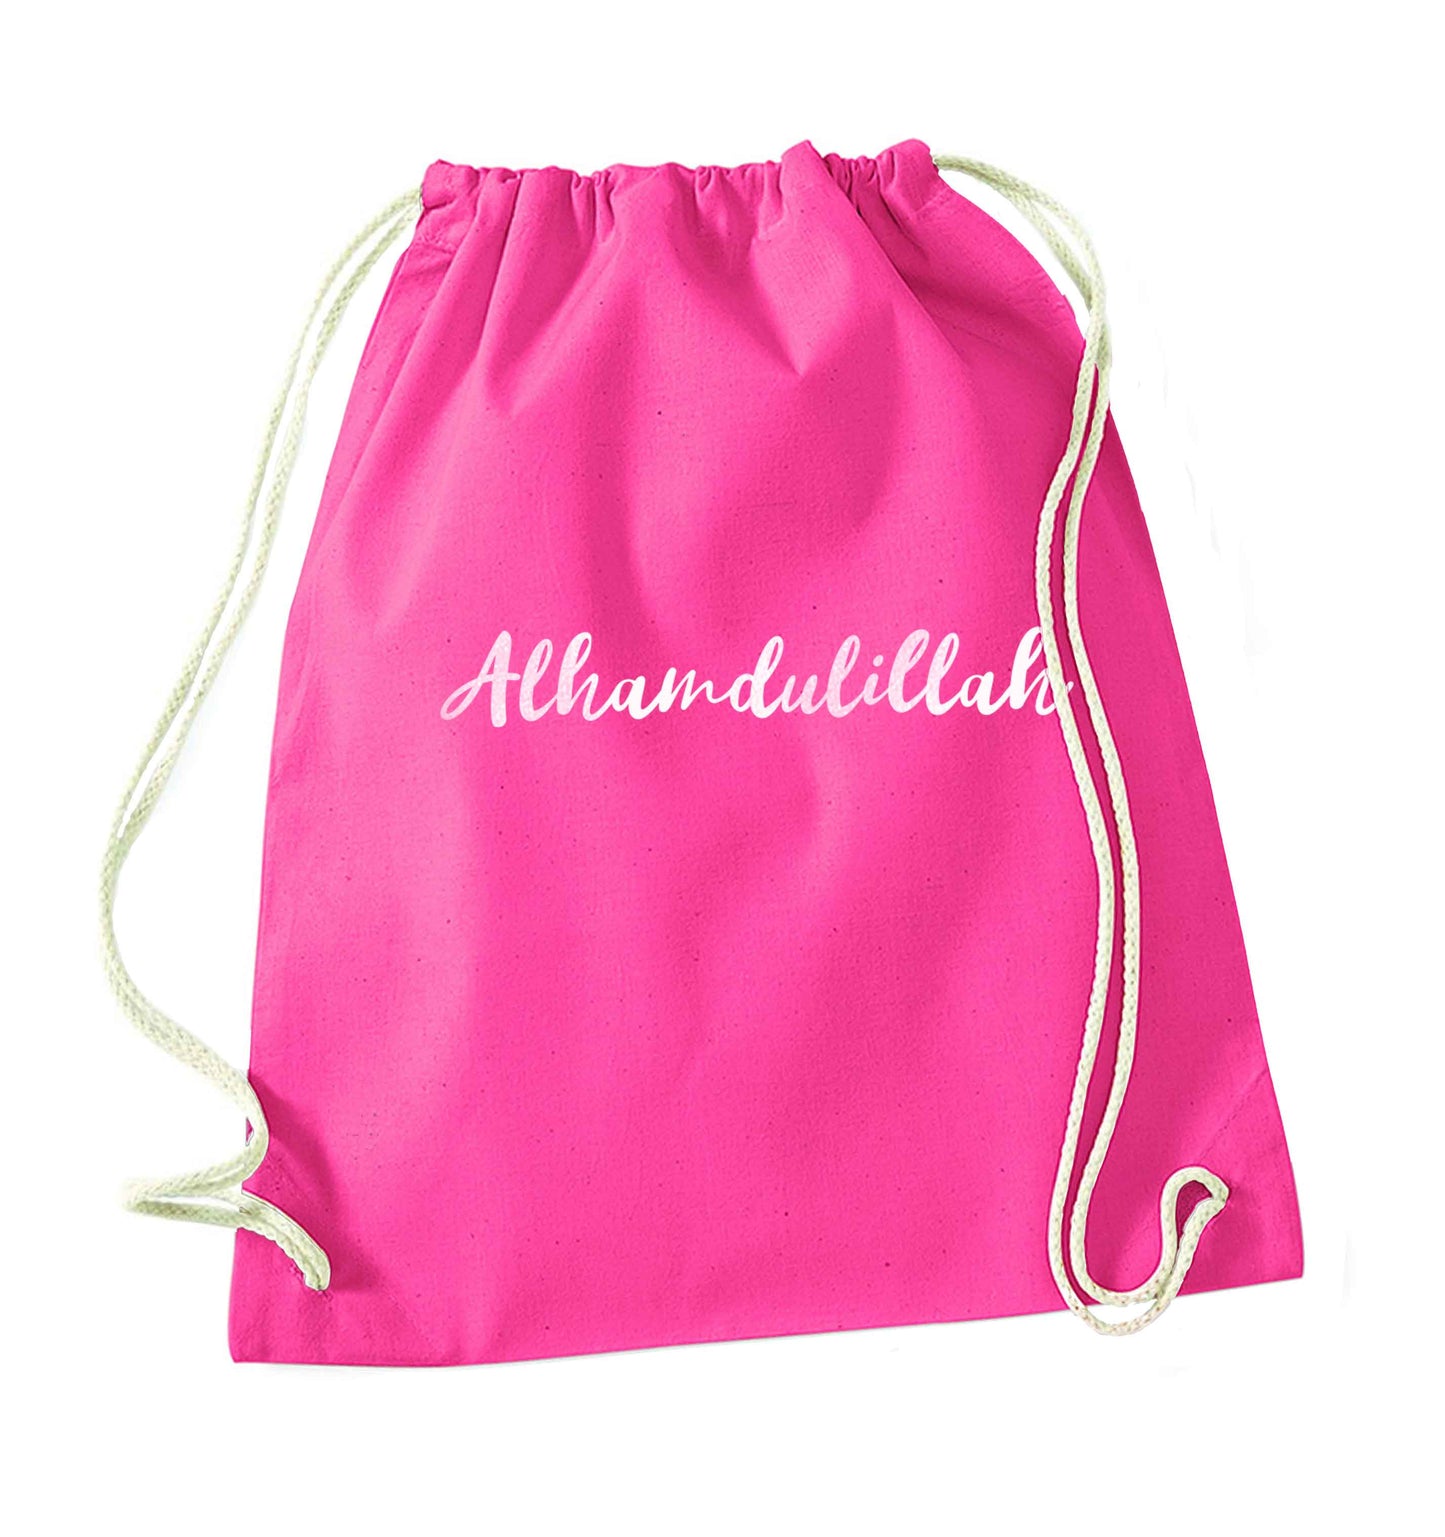 alhamdulillah pink drawstring bag